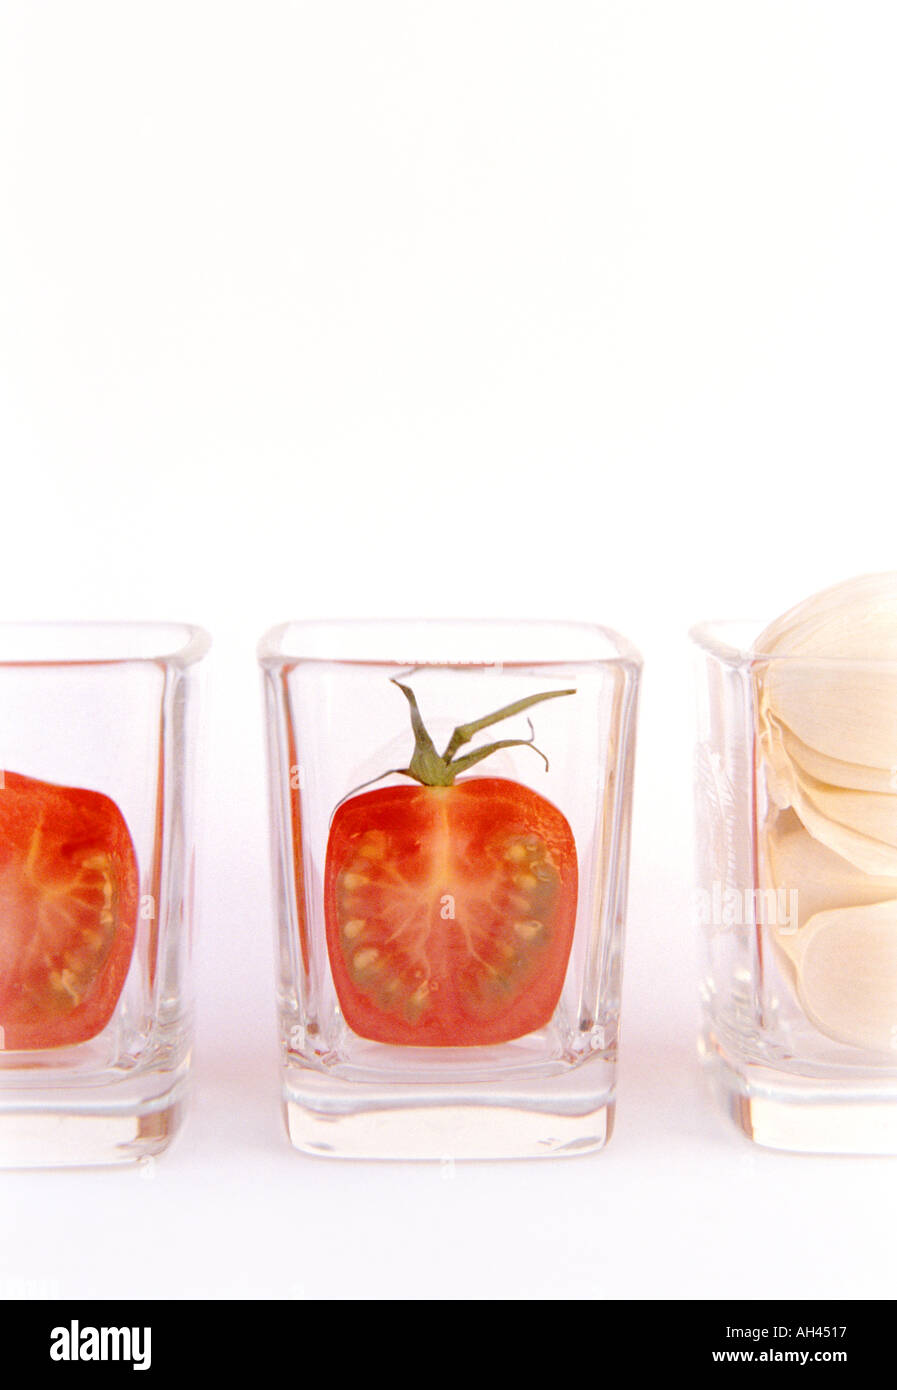 Mini-Kirschen-Tomaten in Scheiben geschnitten und Knoblauchzehe in sauberes Glas shot Gläser auf weißem Hintergrund vertikal aufgereiht Stockfoto